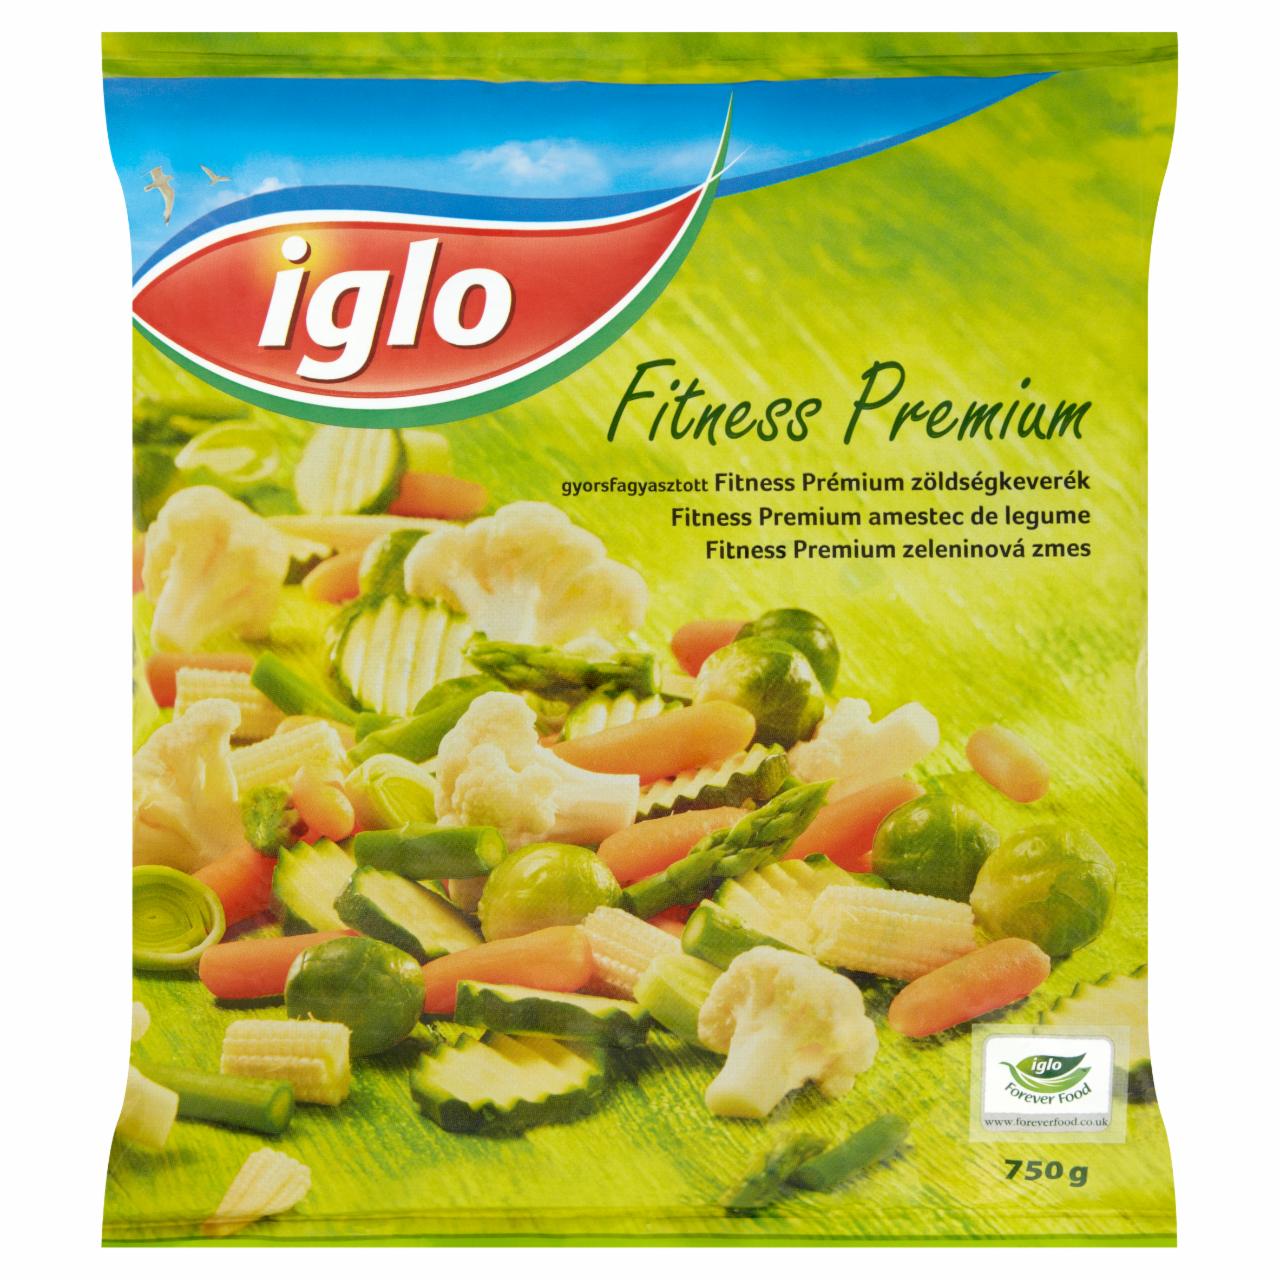 Képek - Iglo gyorsfagyasztott fitness prémium zöldségkeverék 750 g